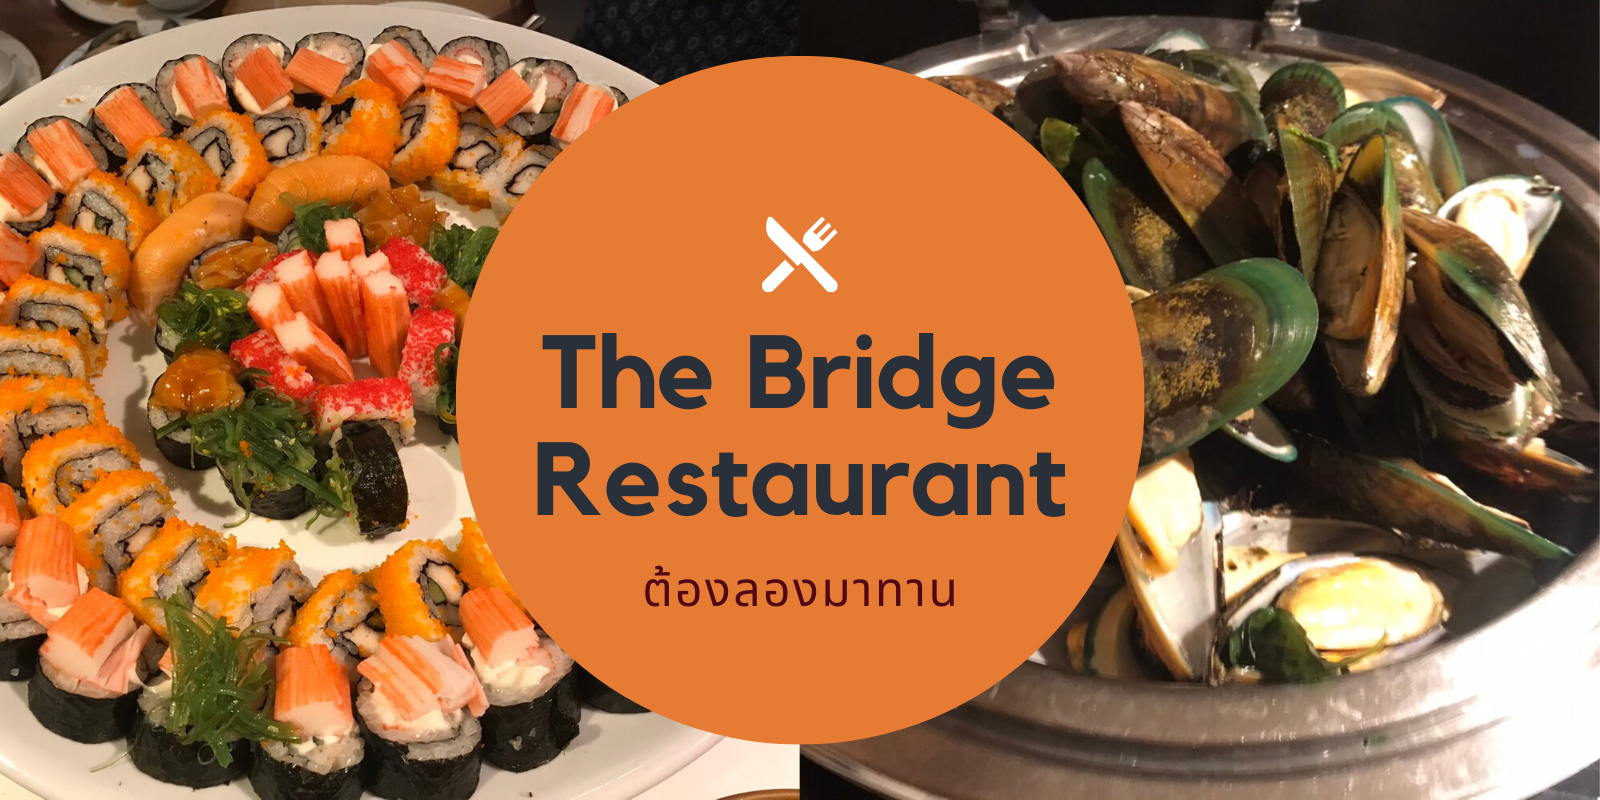 The Bridge Restaurant